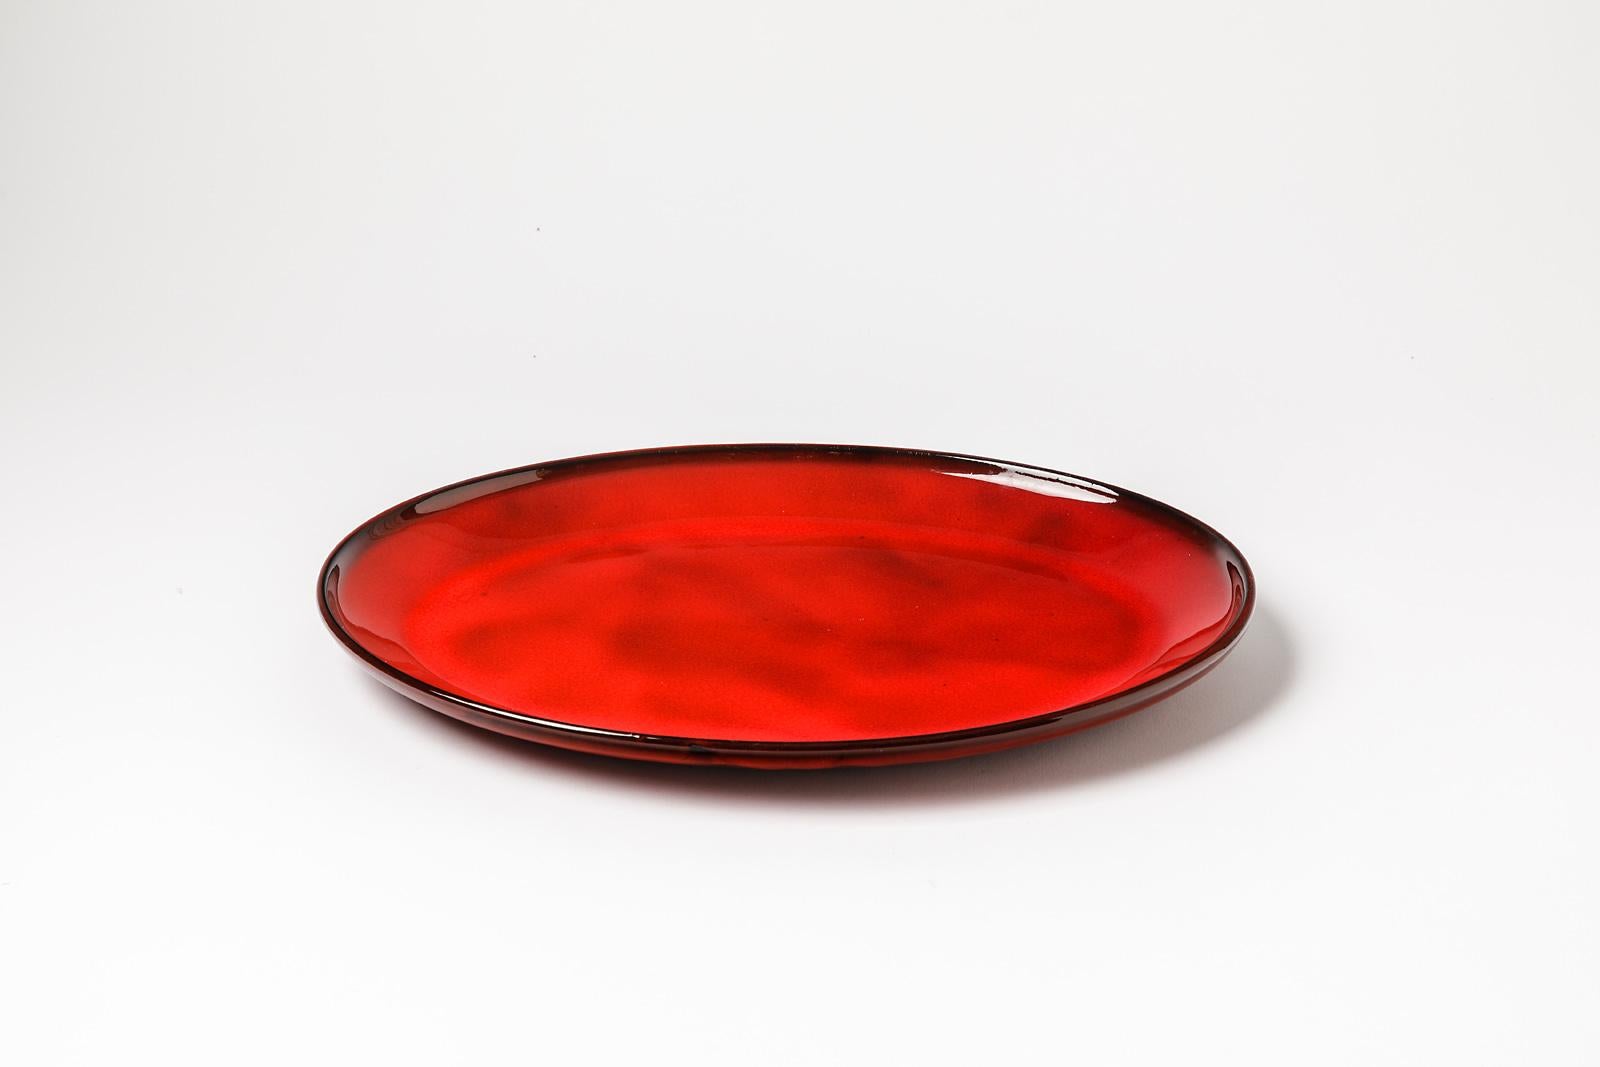 Gerard Hofmann

Realisiert in Vallauris um 1950

Original und große glänzend rote Keramikplatte

Original perfekter Zustand

Signiert unter dem Sockel

Maße: Höhe 3 cm Groß 35 cm Breite 25 cm.